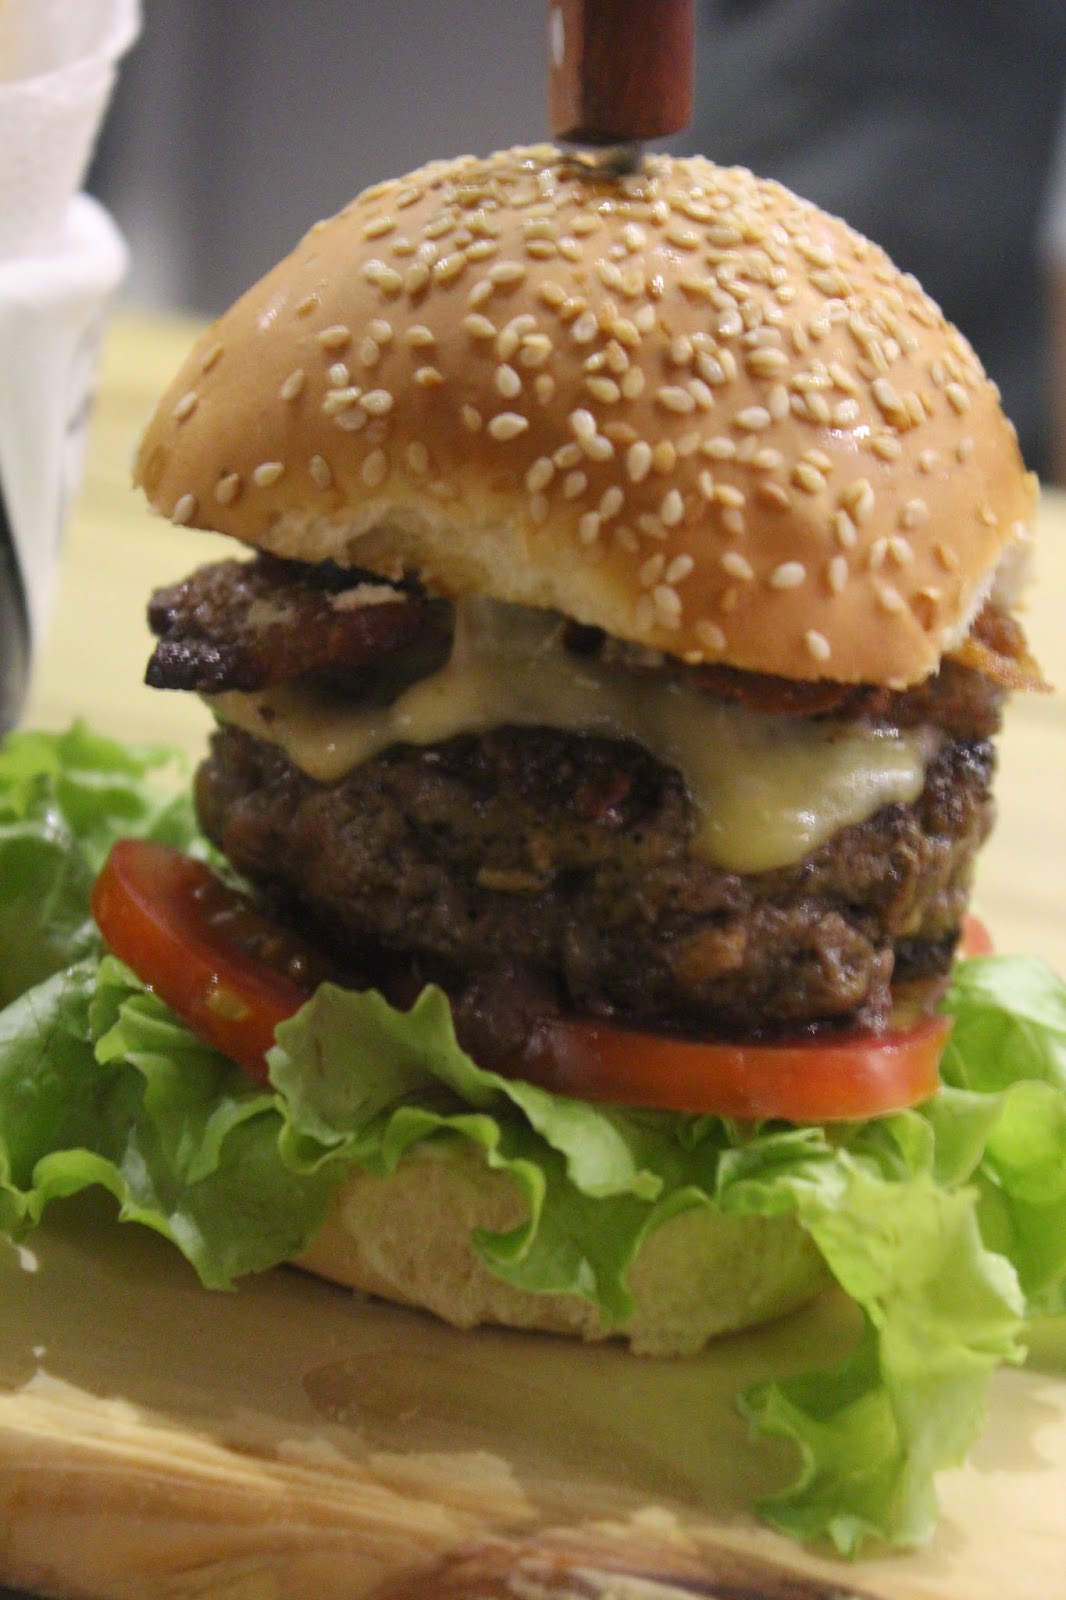 Não, você não tá lendo dobrado 👀 É - Burger King Brasil